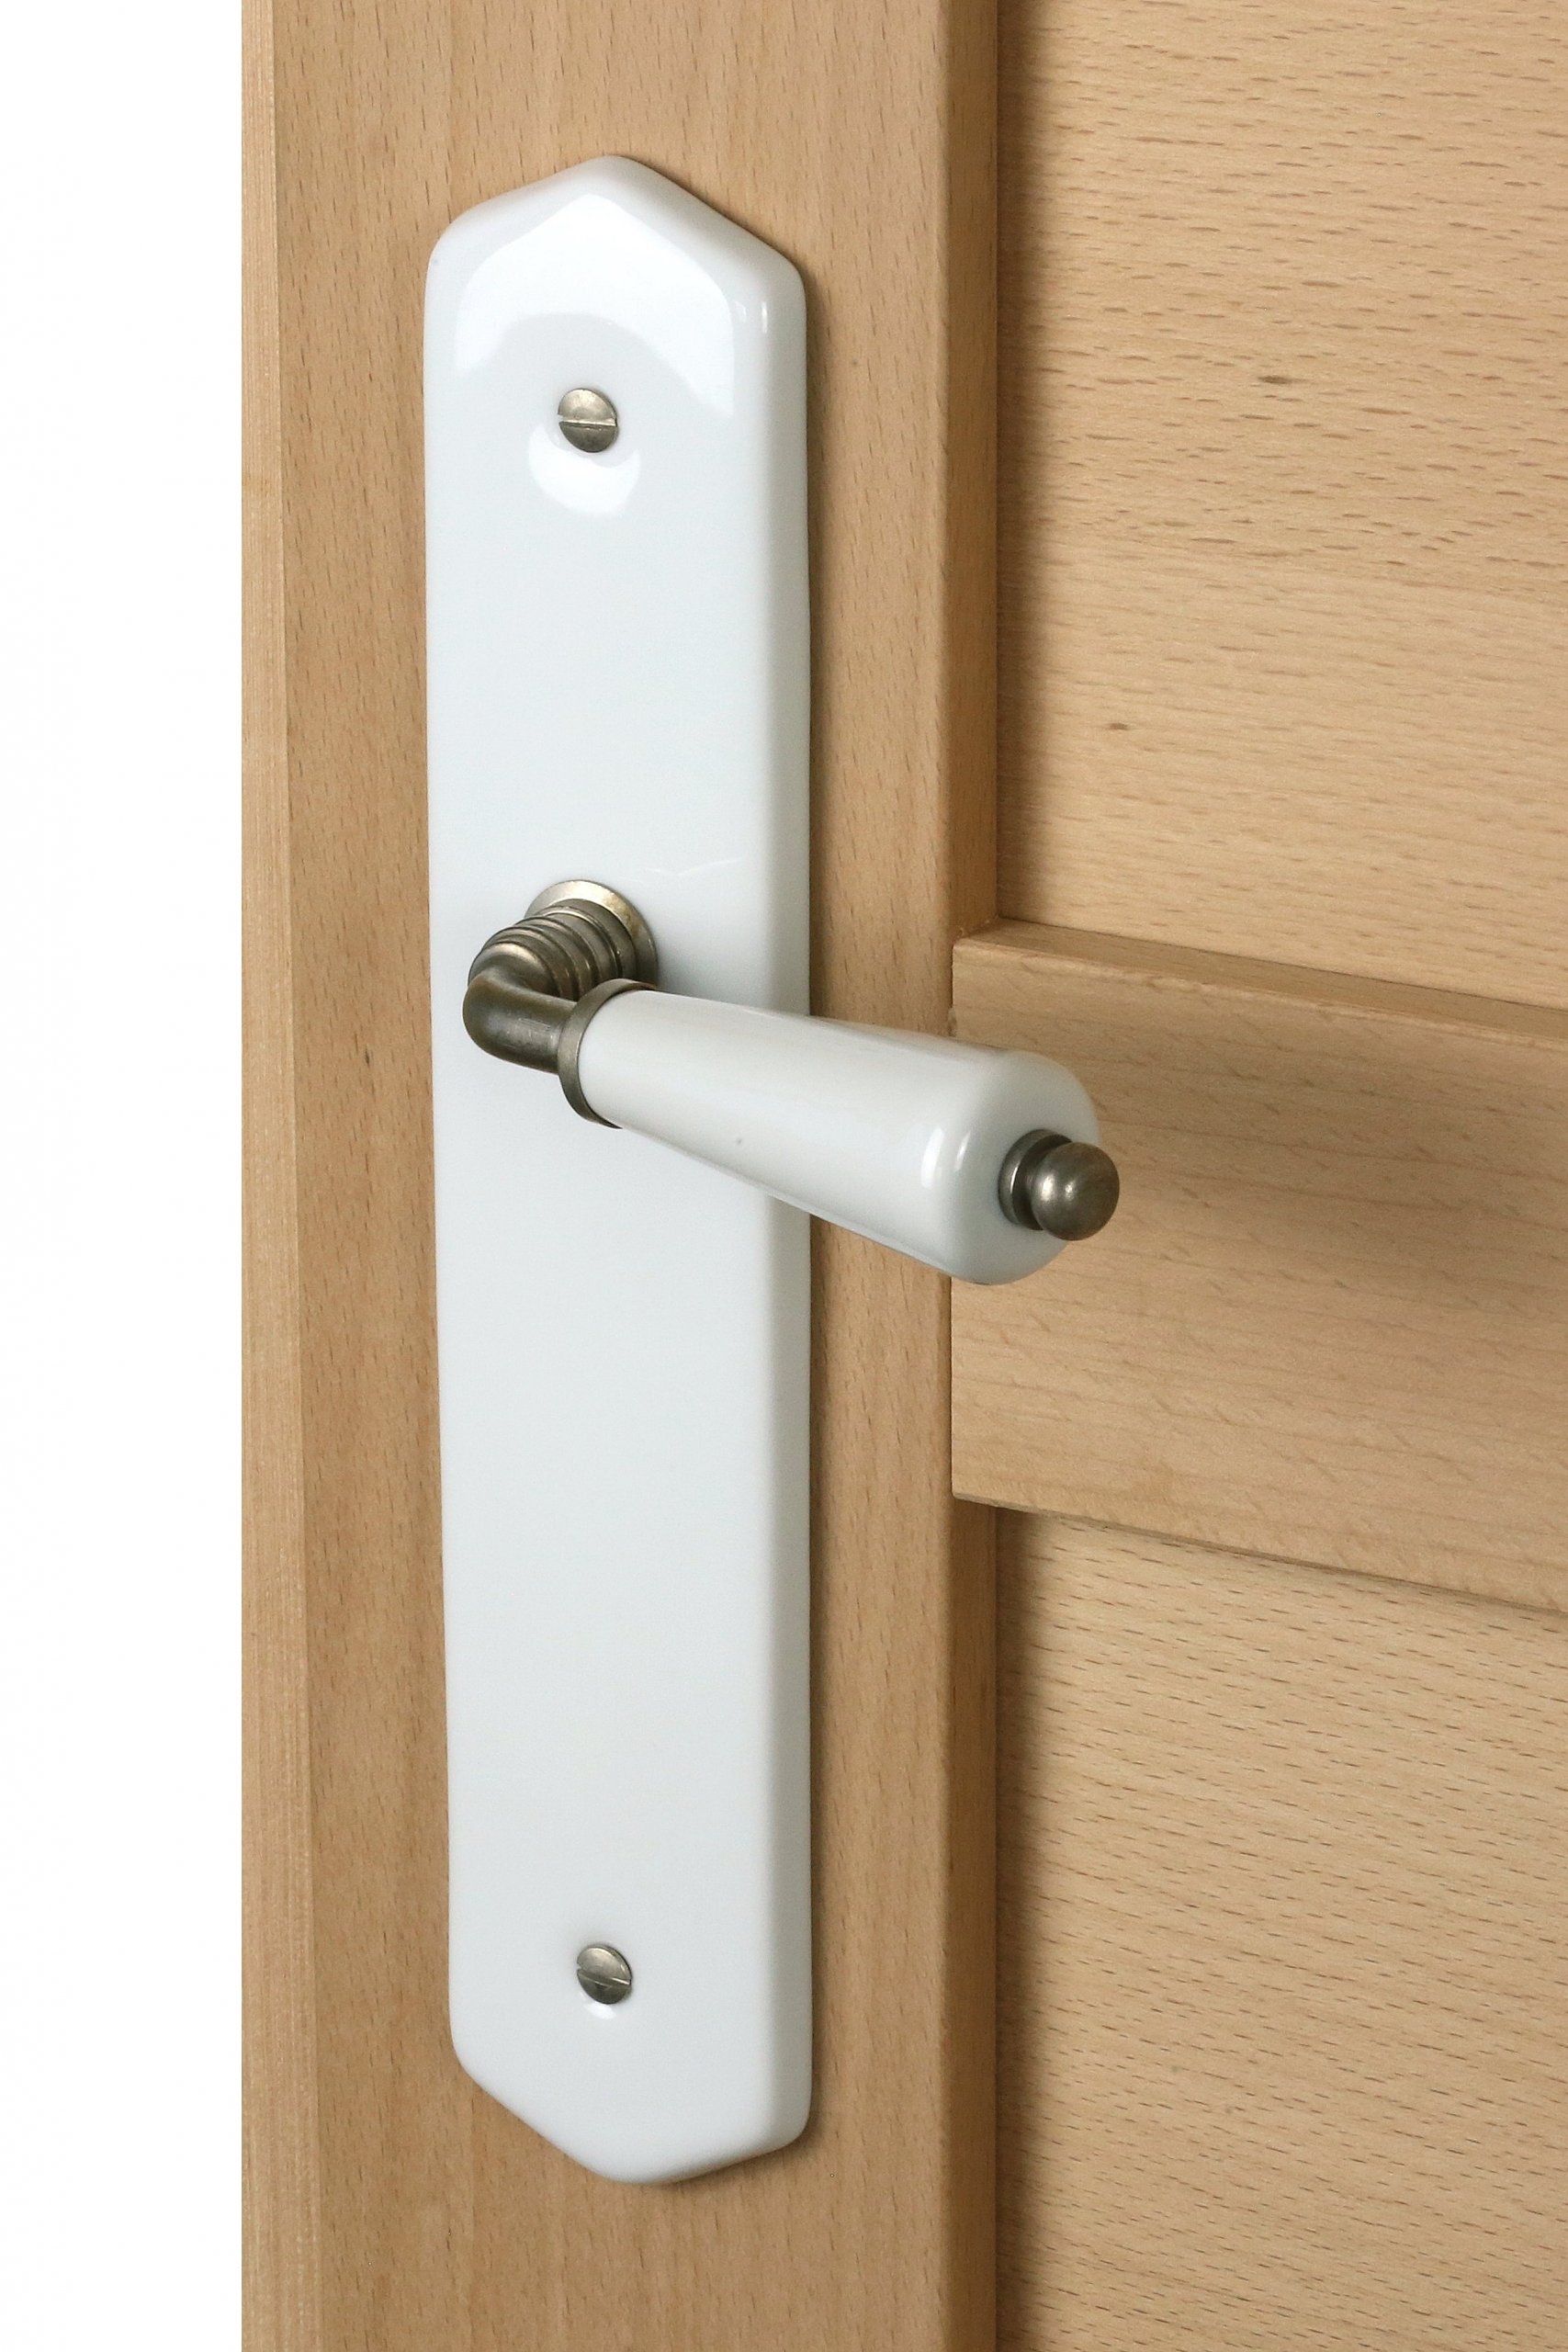 Installer une serrure sur une porte intérieure : conseils